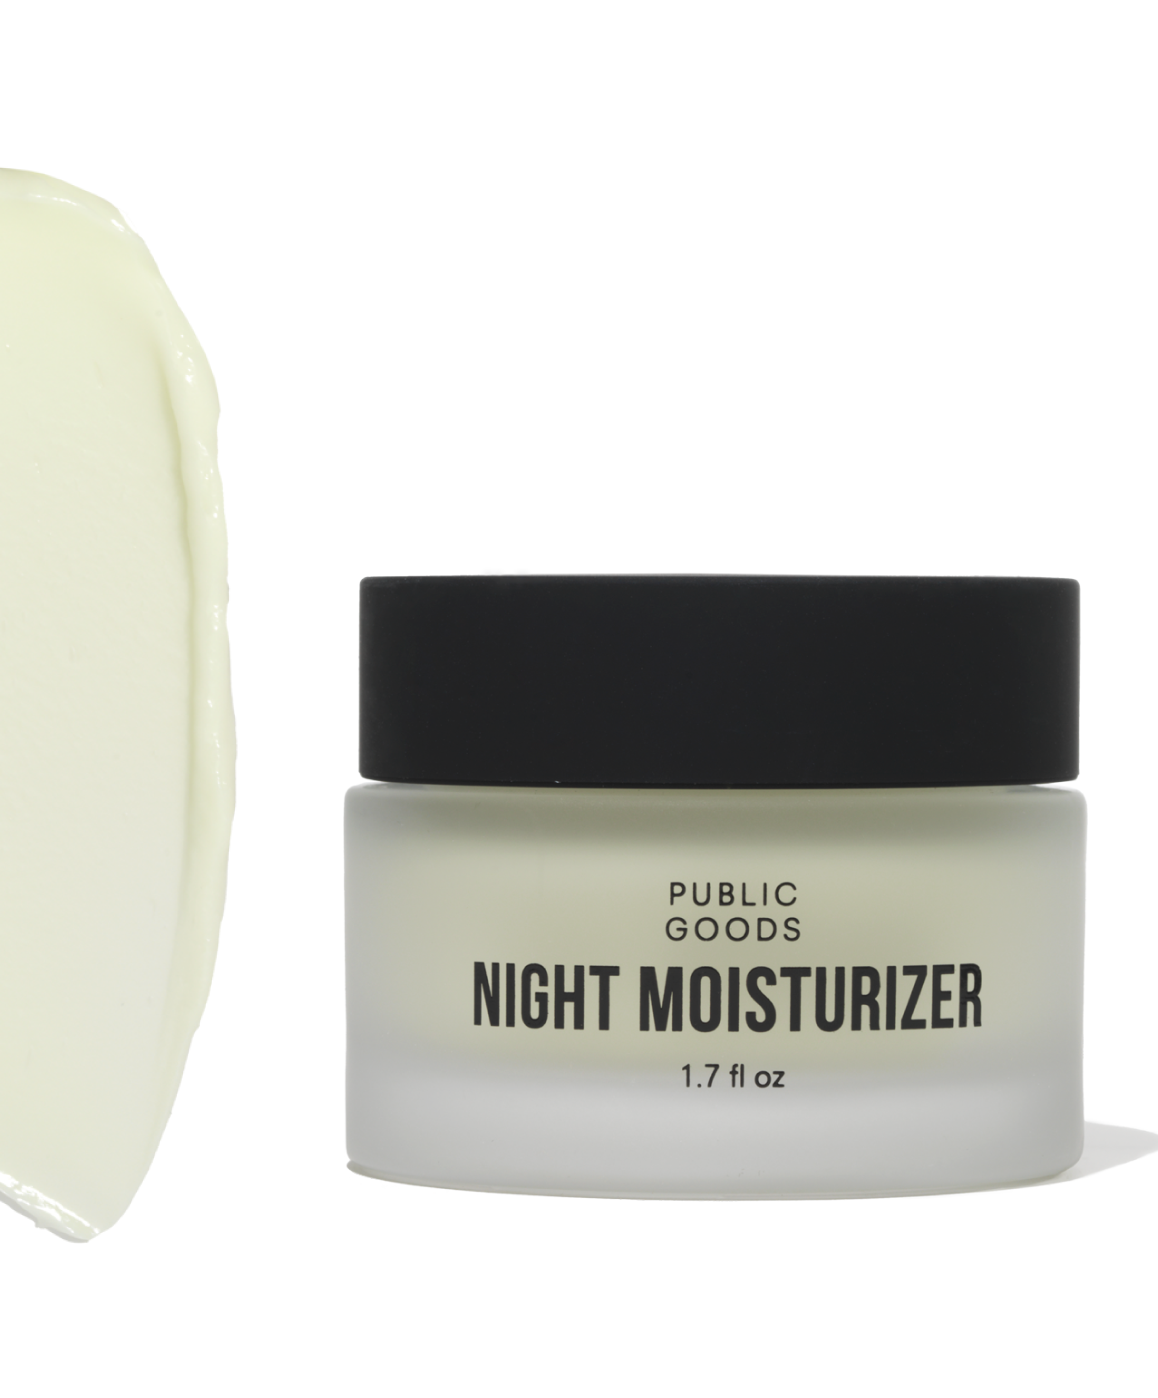 Night moisturizer Product Image